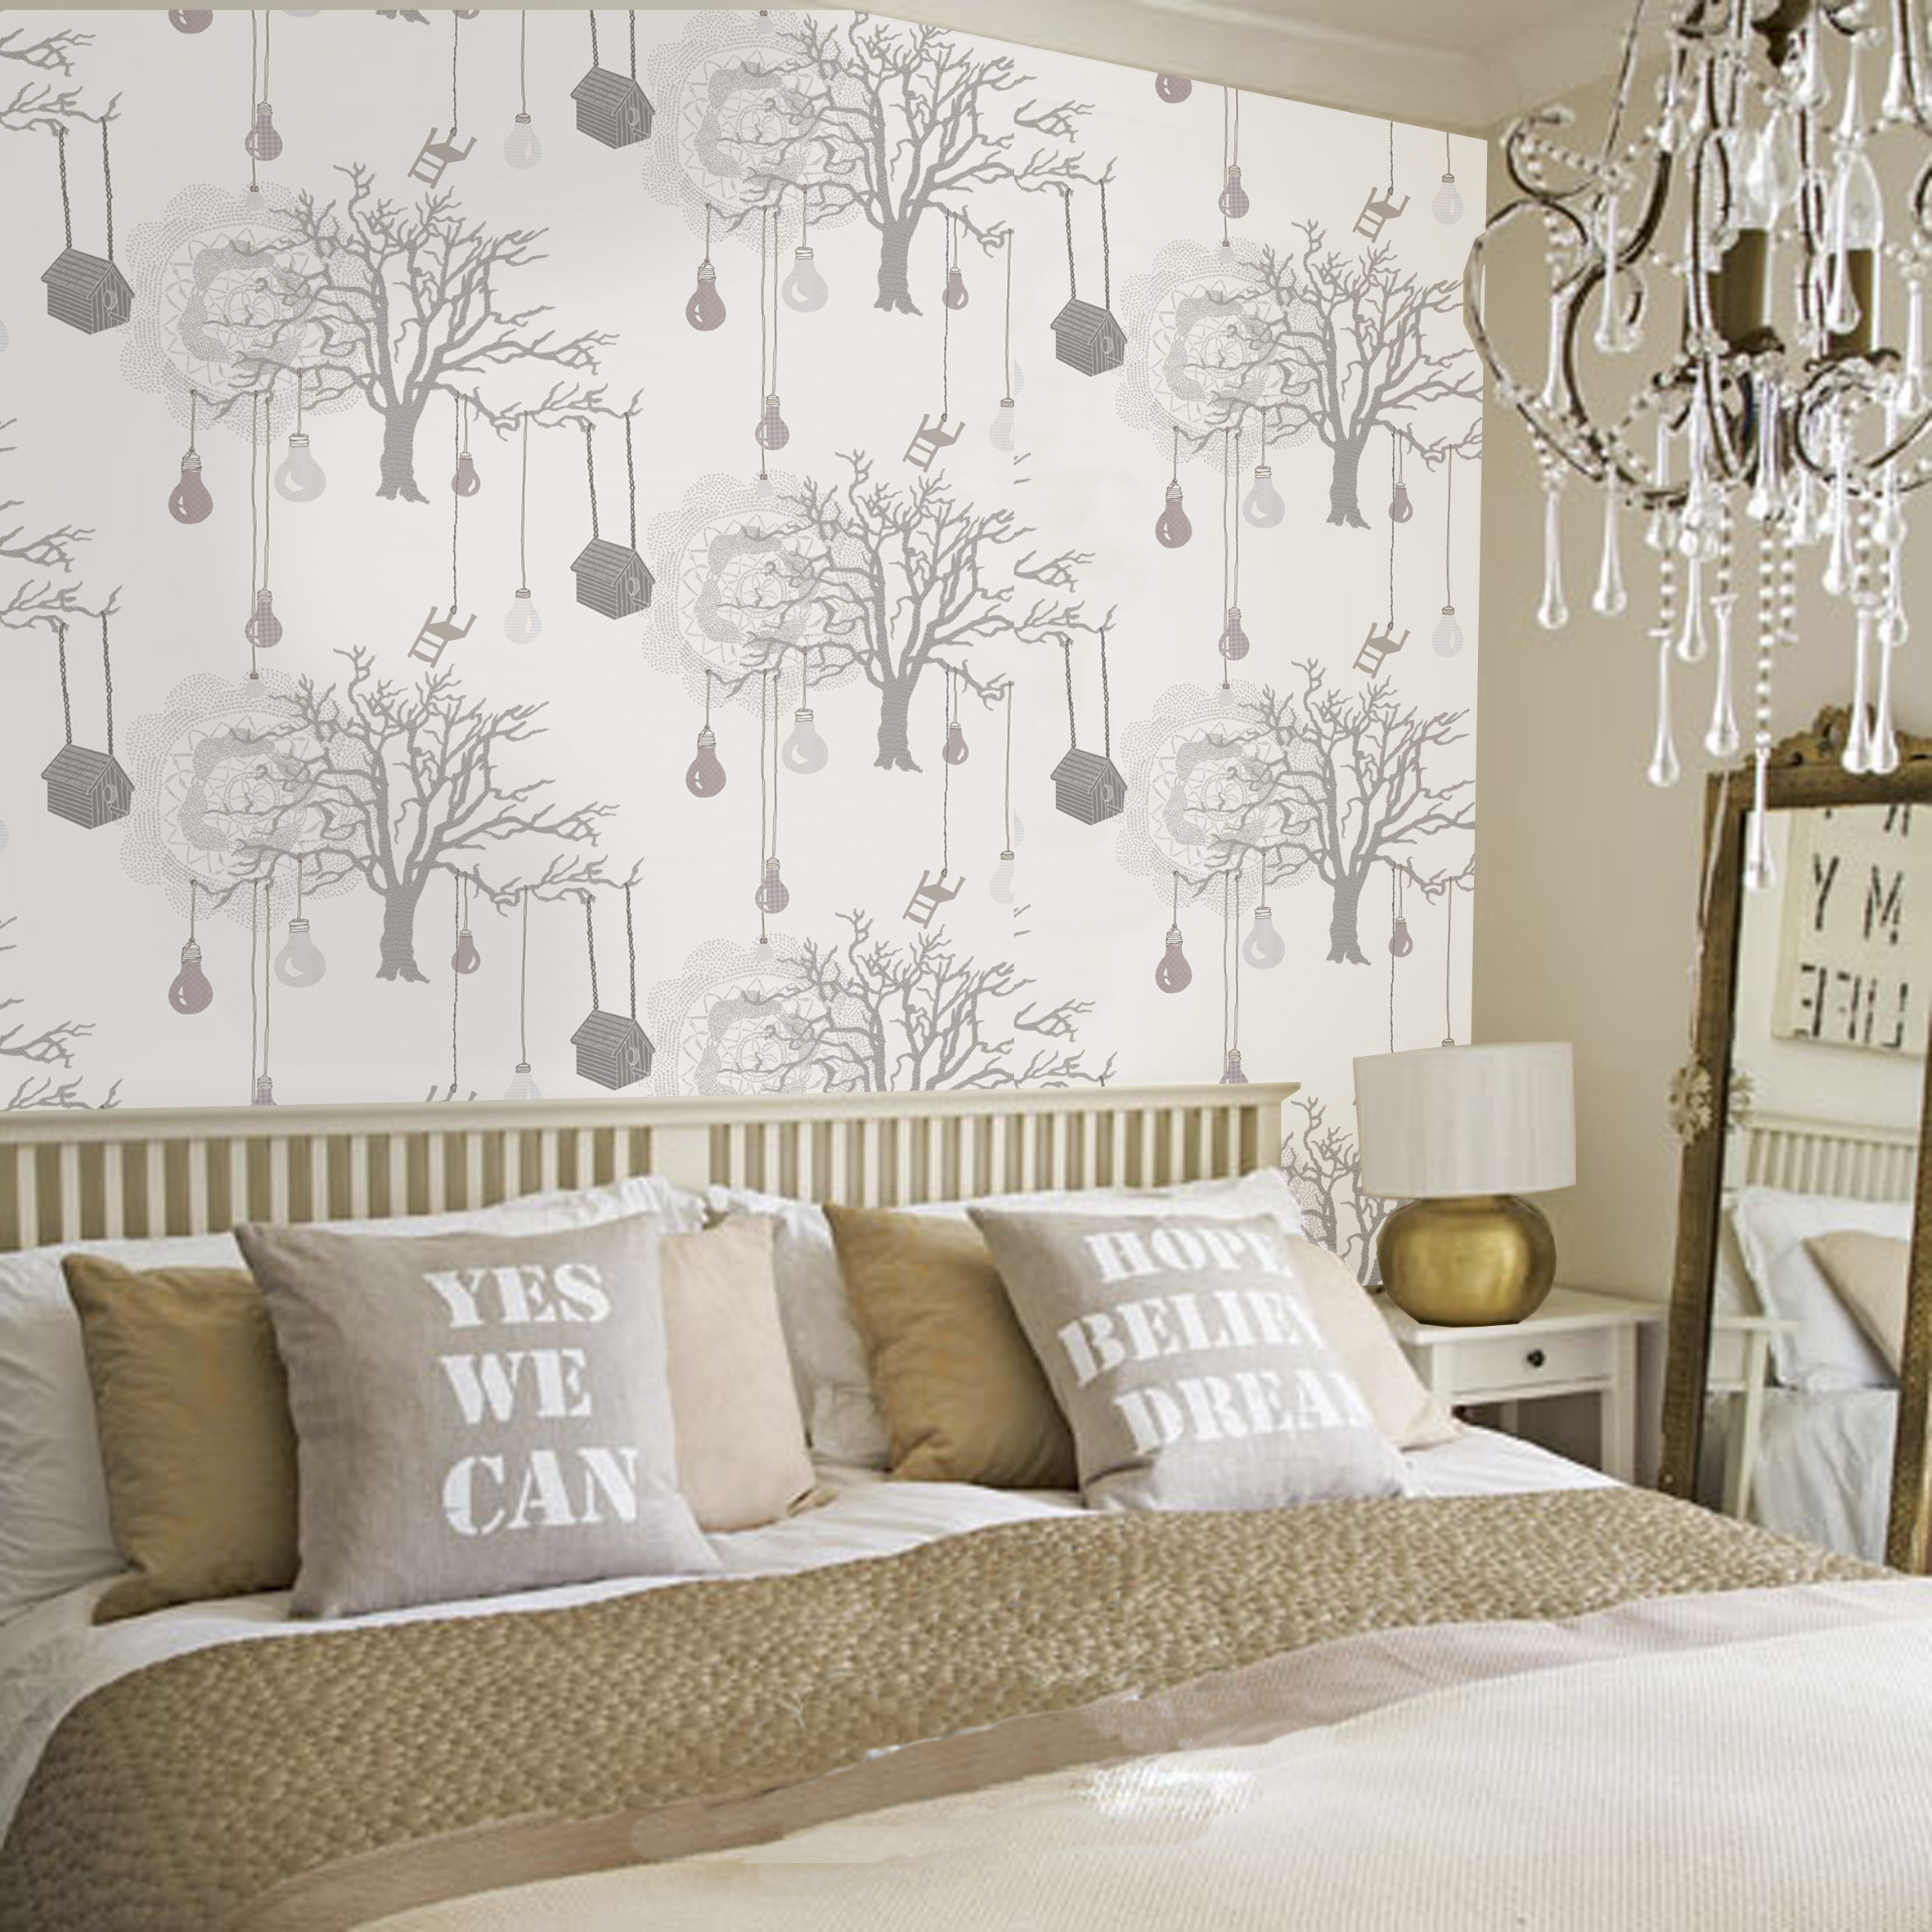 Wallpaper Design For Bedroom
 30 Best Diy Wallpaper Designs for Bedrooms UK 2015